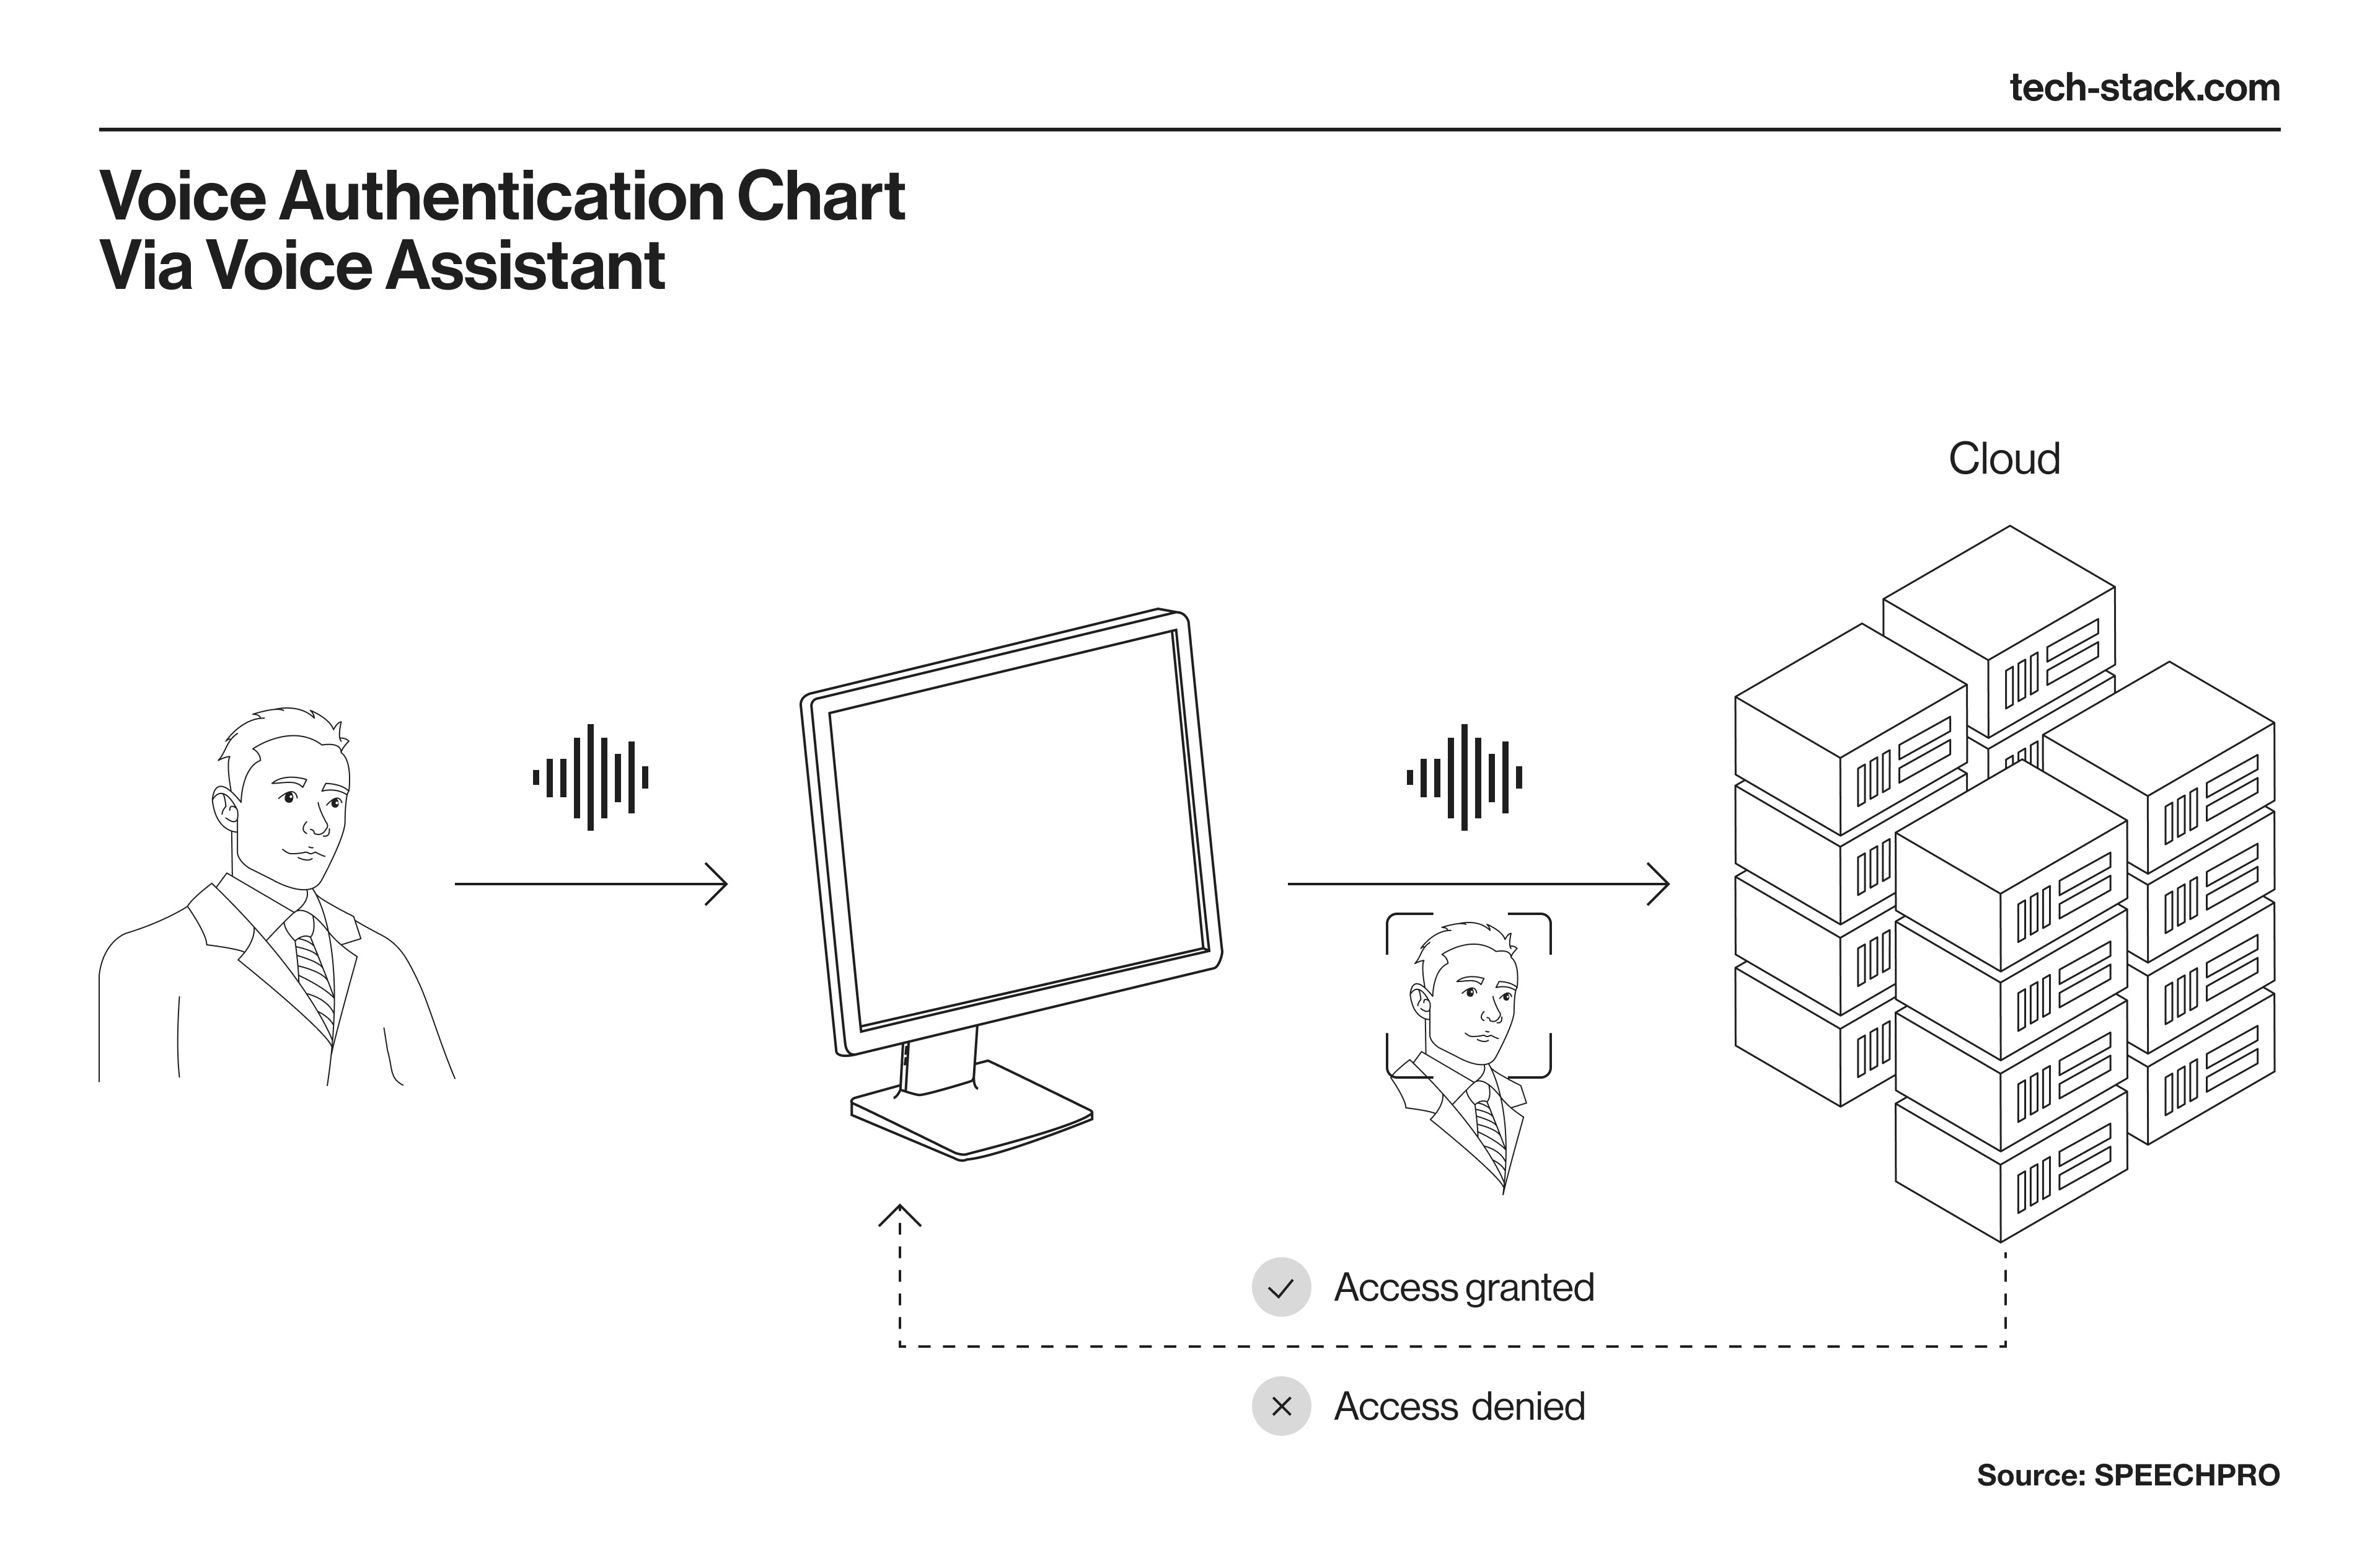 Voice authentication chart via voice assistant